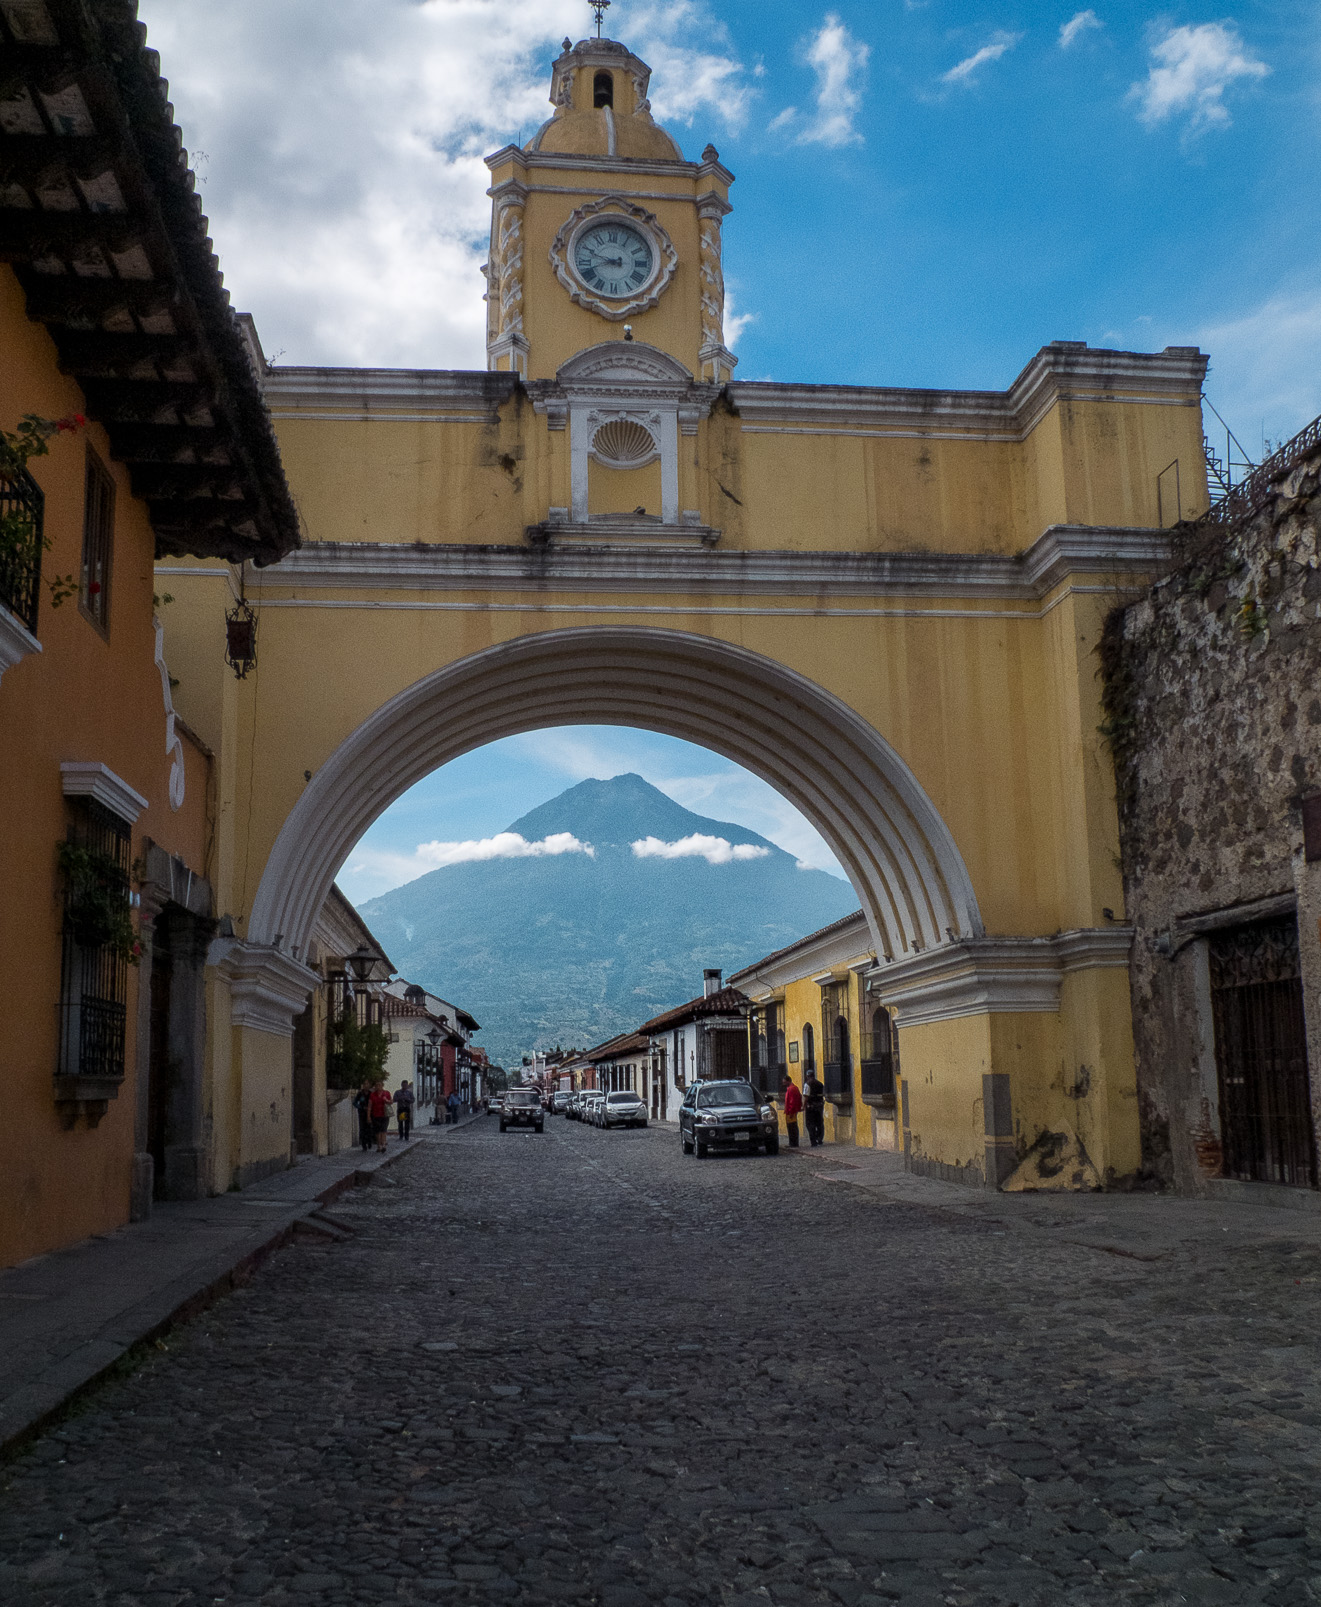 Antigua est une petite ville cernée de volcans  Elle est connue pour ses bâtiments coloniaux espagnols, dont la plupart ont été restaurés après le tremblement de terre de 1773, qui a mis fin à son statut bicentenaire de capitale coloniale du pays.